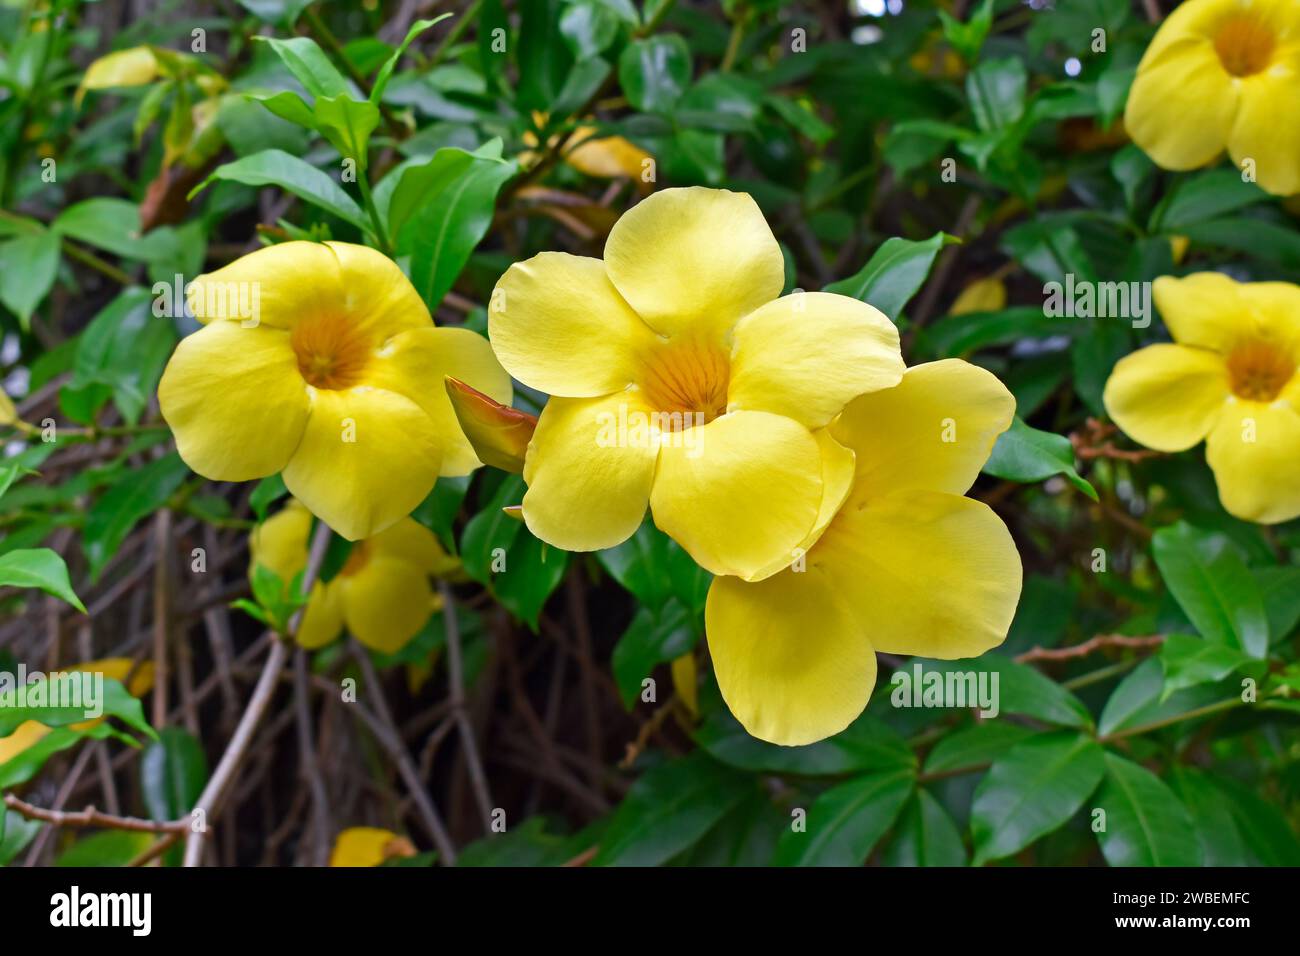 Golden trumpet or common trumpetvine flowers (Allamanda cathartica ...